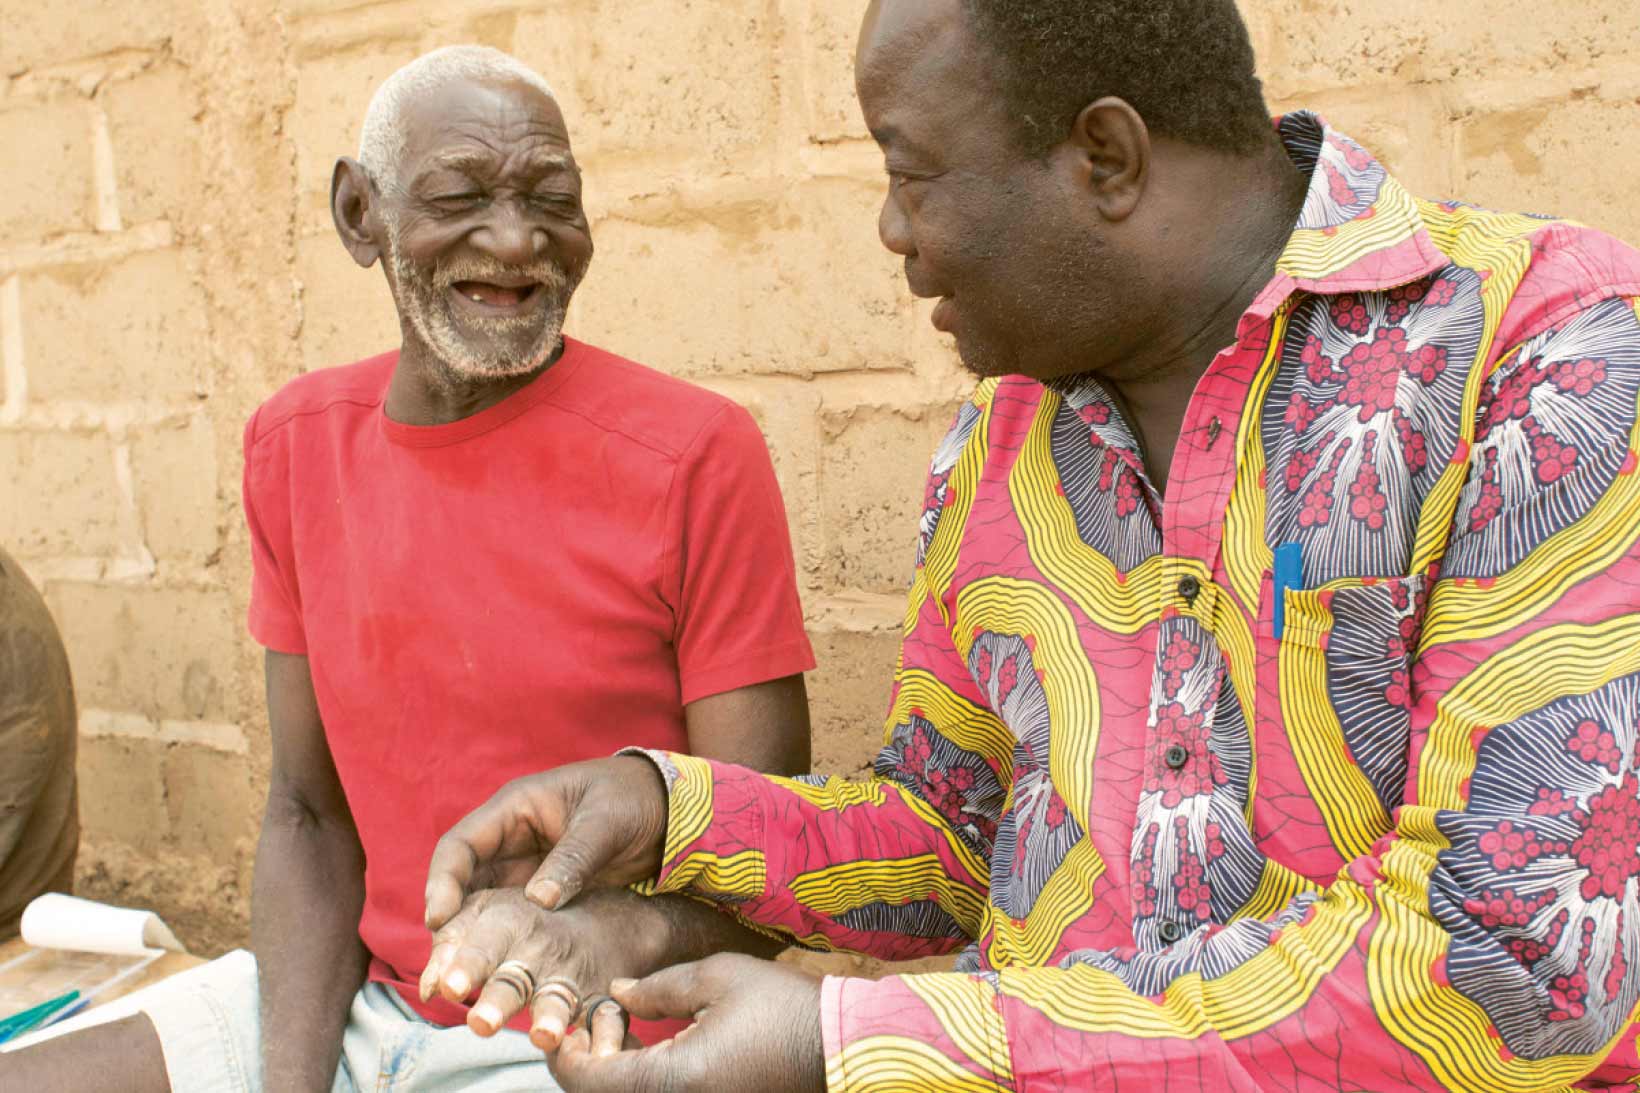 Un homme de Burkina Faso est assis sur un banc et tient la main d'un autre homme à côté de lui. Les deux sourient.